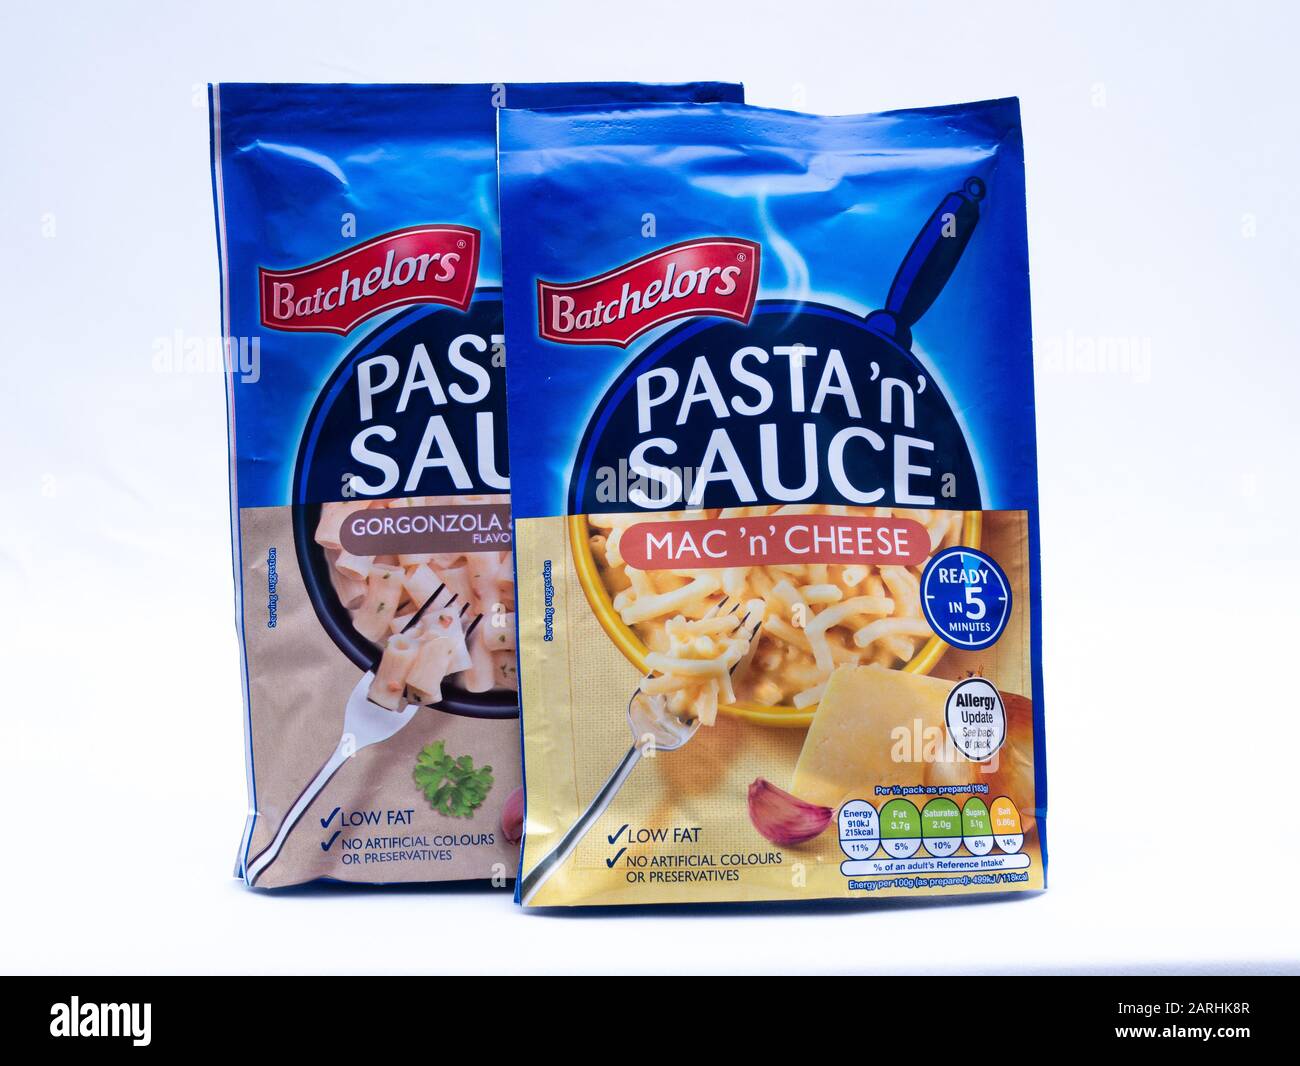 Royaume-Uni, janvier 2020: Batchelors Pasta 'n' sauce Macaroni et gorgonzola fromage et paquet de champignons sur fond blanc studio Banque D'Images